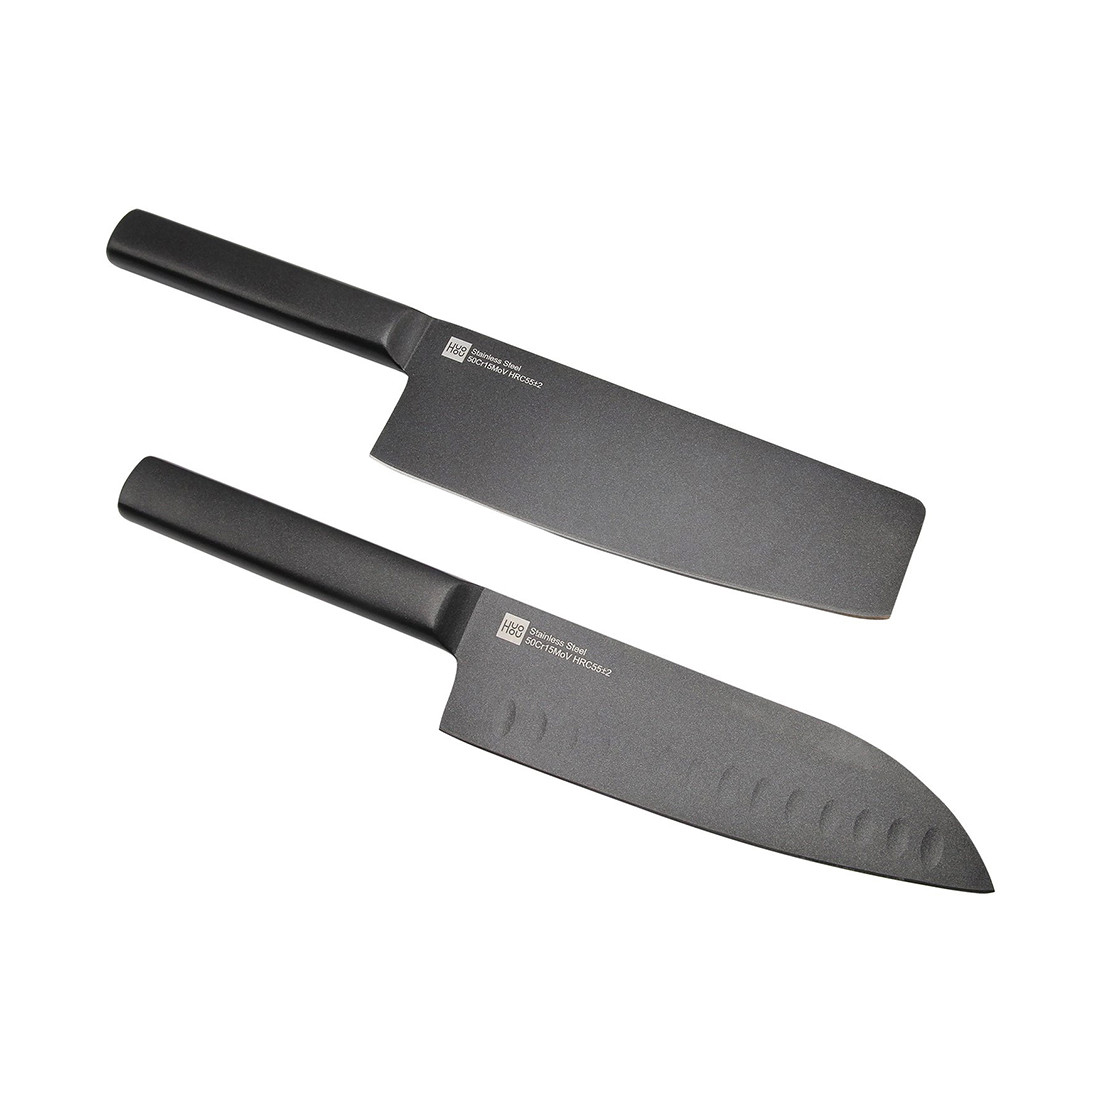 Набор ножей HuoHou Cool black non-stick steel knife set, фото 1